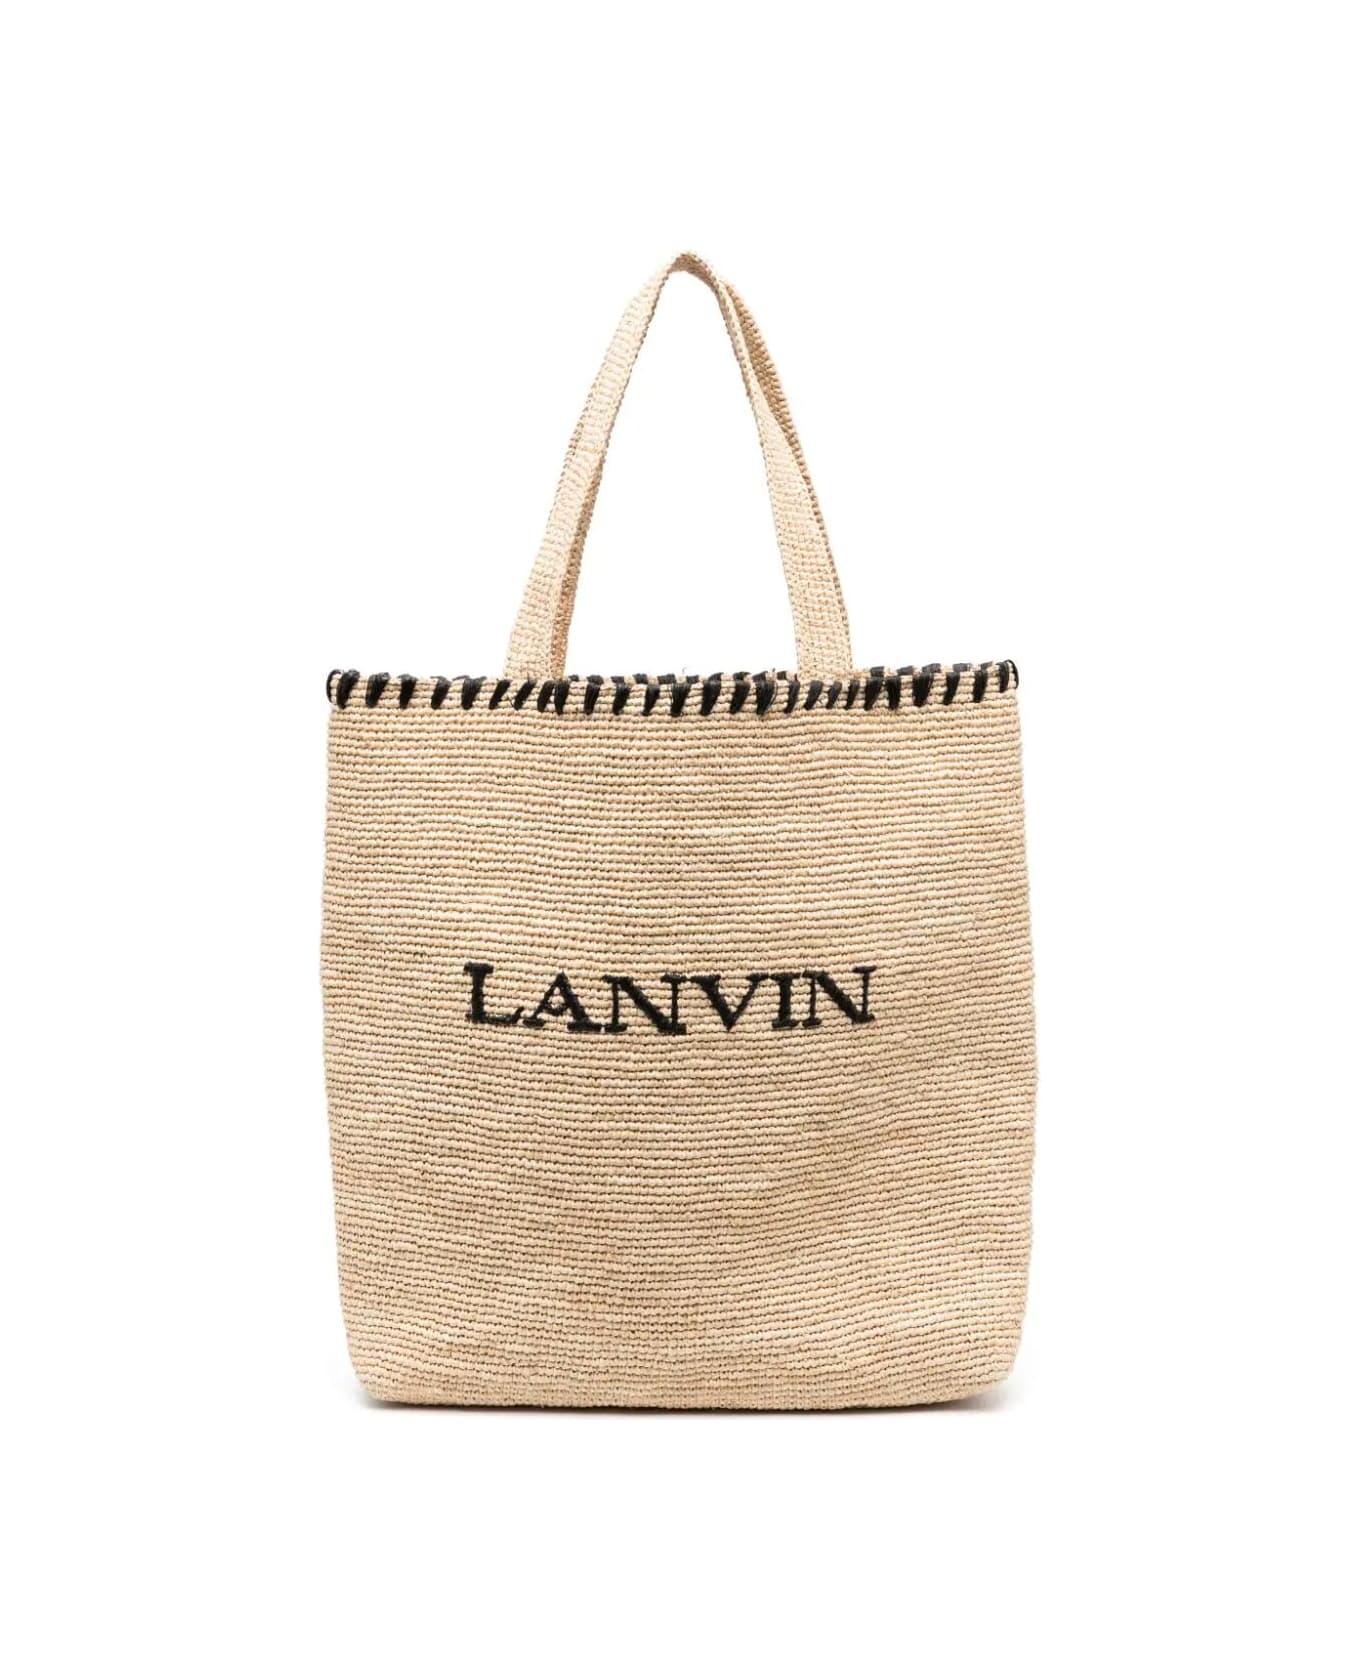 Lanvin Tote Bag - Natural Black